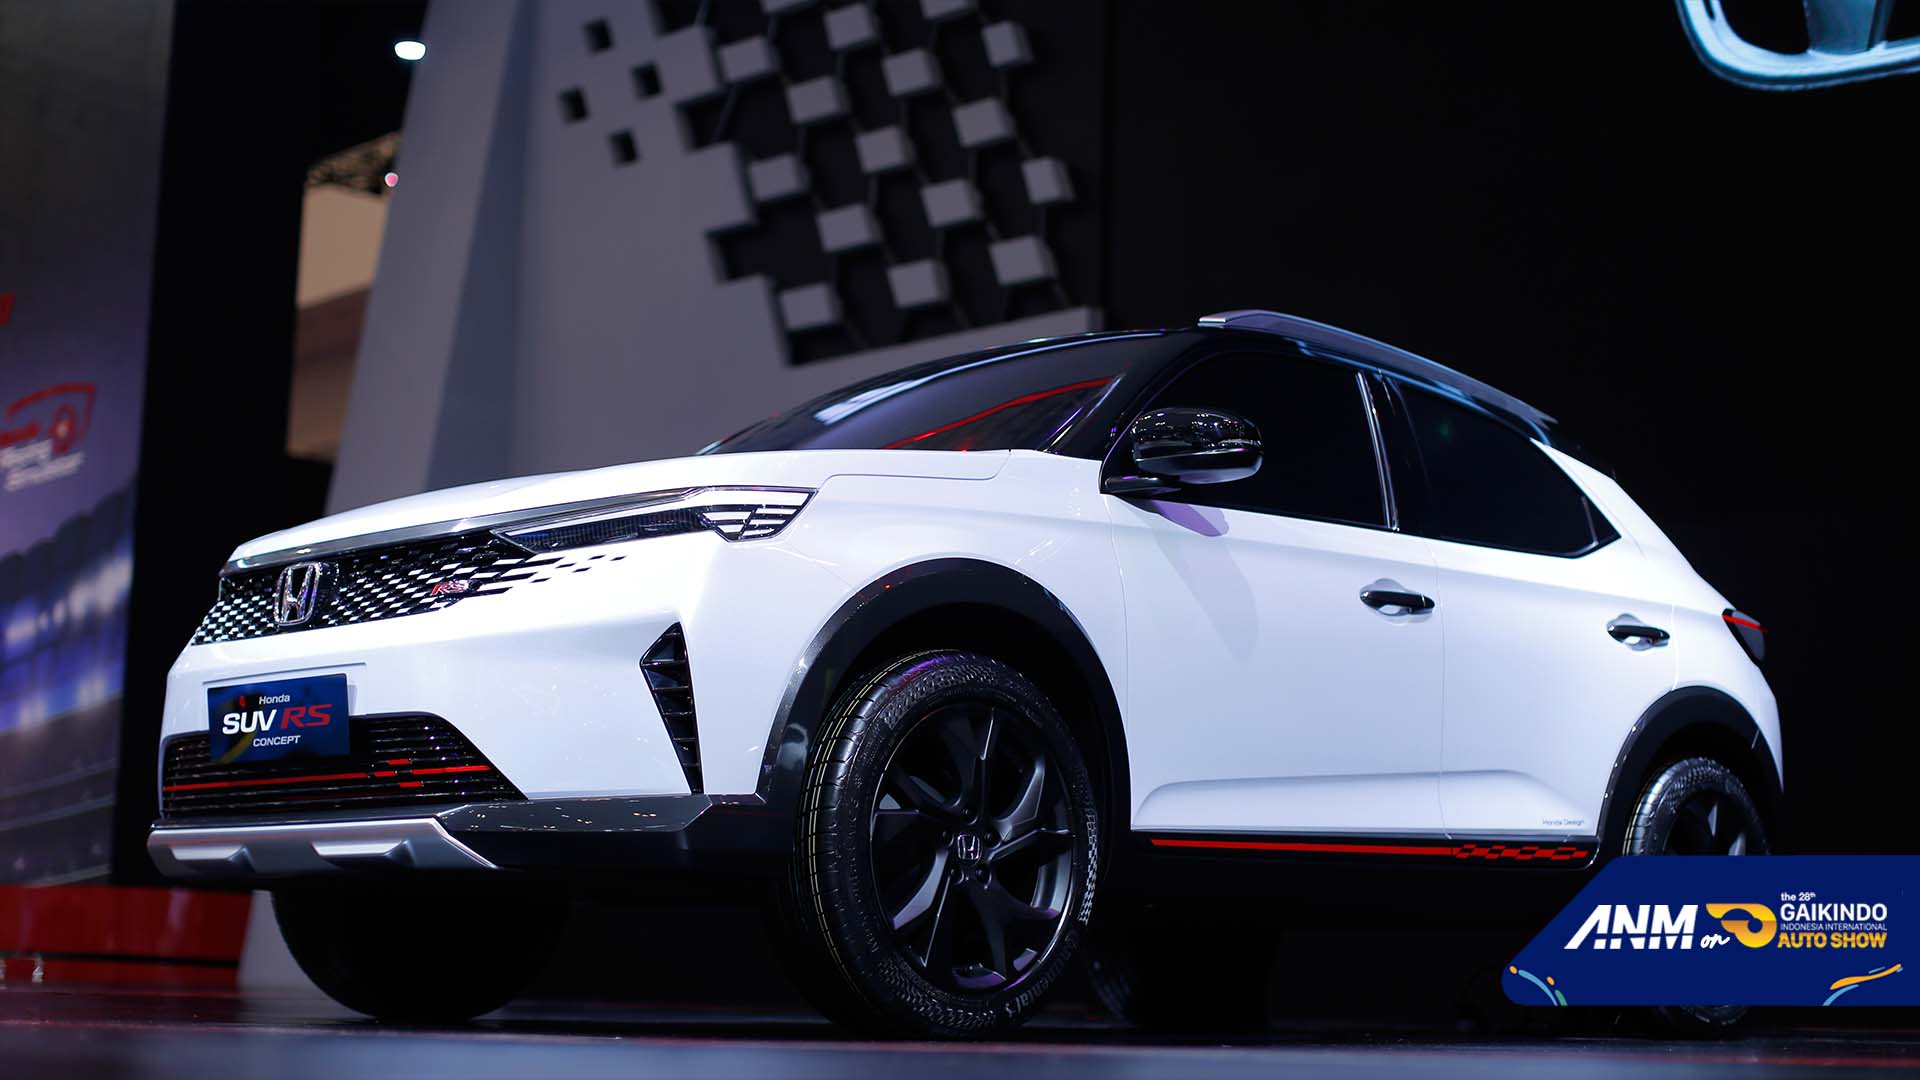 Berita, Mesin Honda SUV RS Concept: GIIAS 2021 : Foto Lengkap Honda SUV RS Concept, Emang Ganteng!